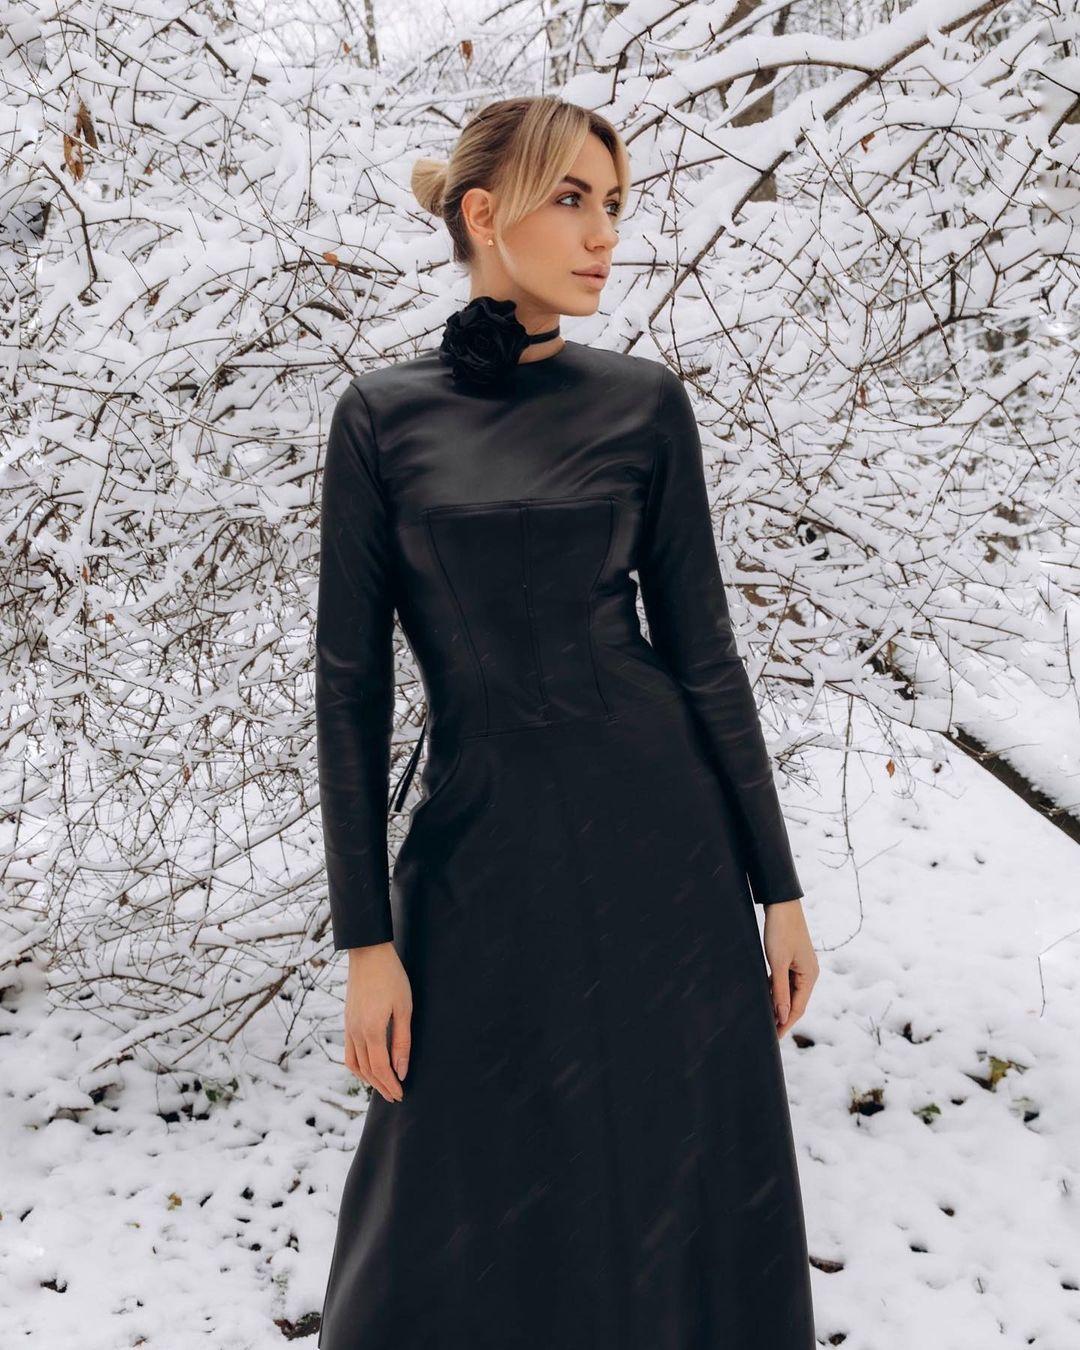 Леся Нікітюк - фото в шкіряній сукні